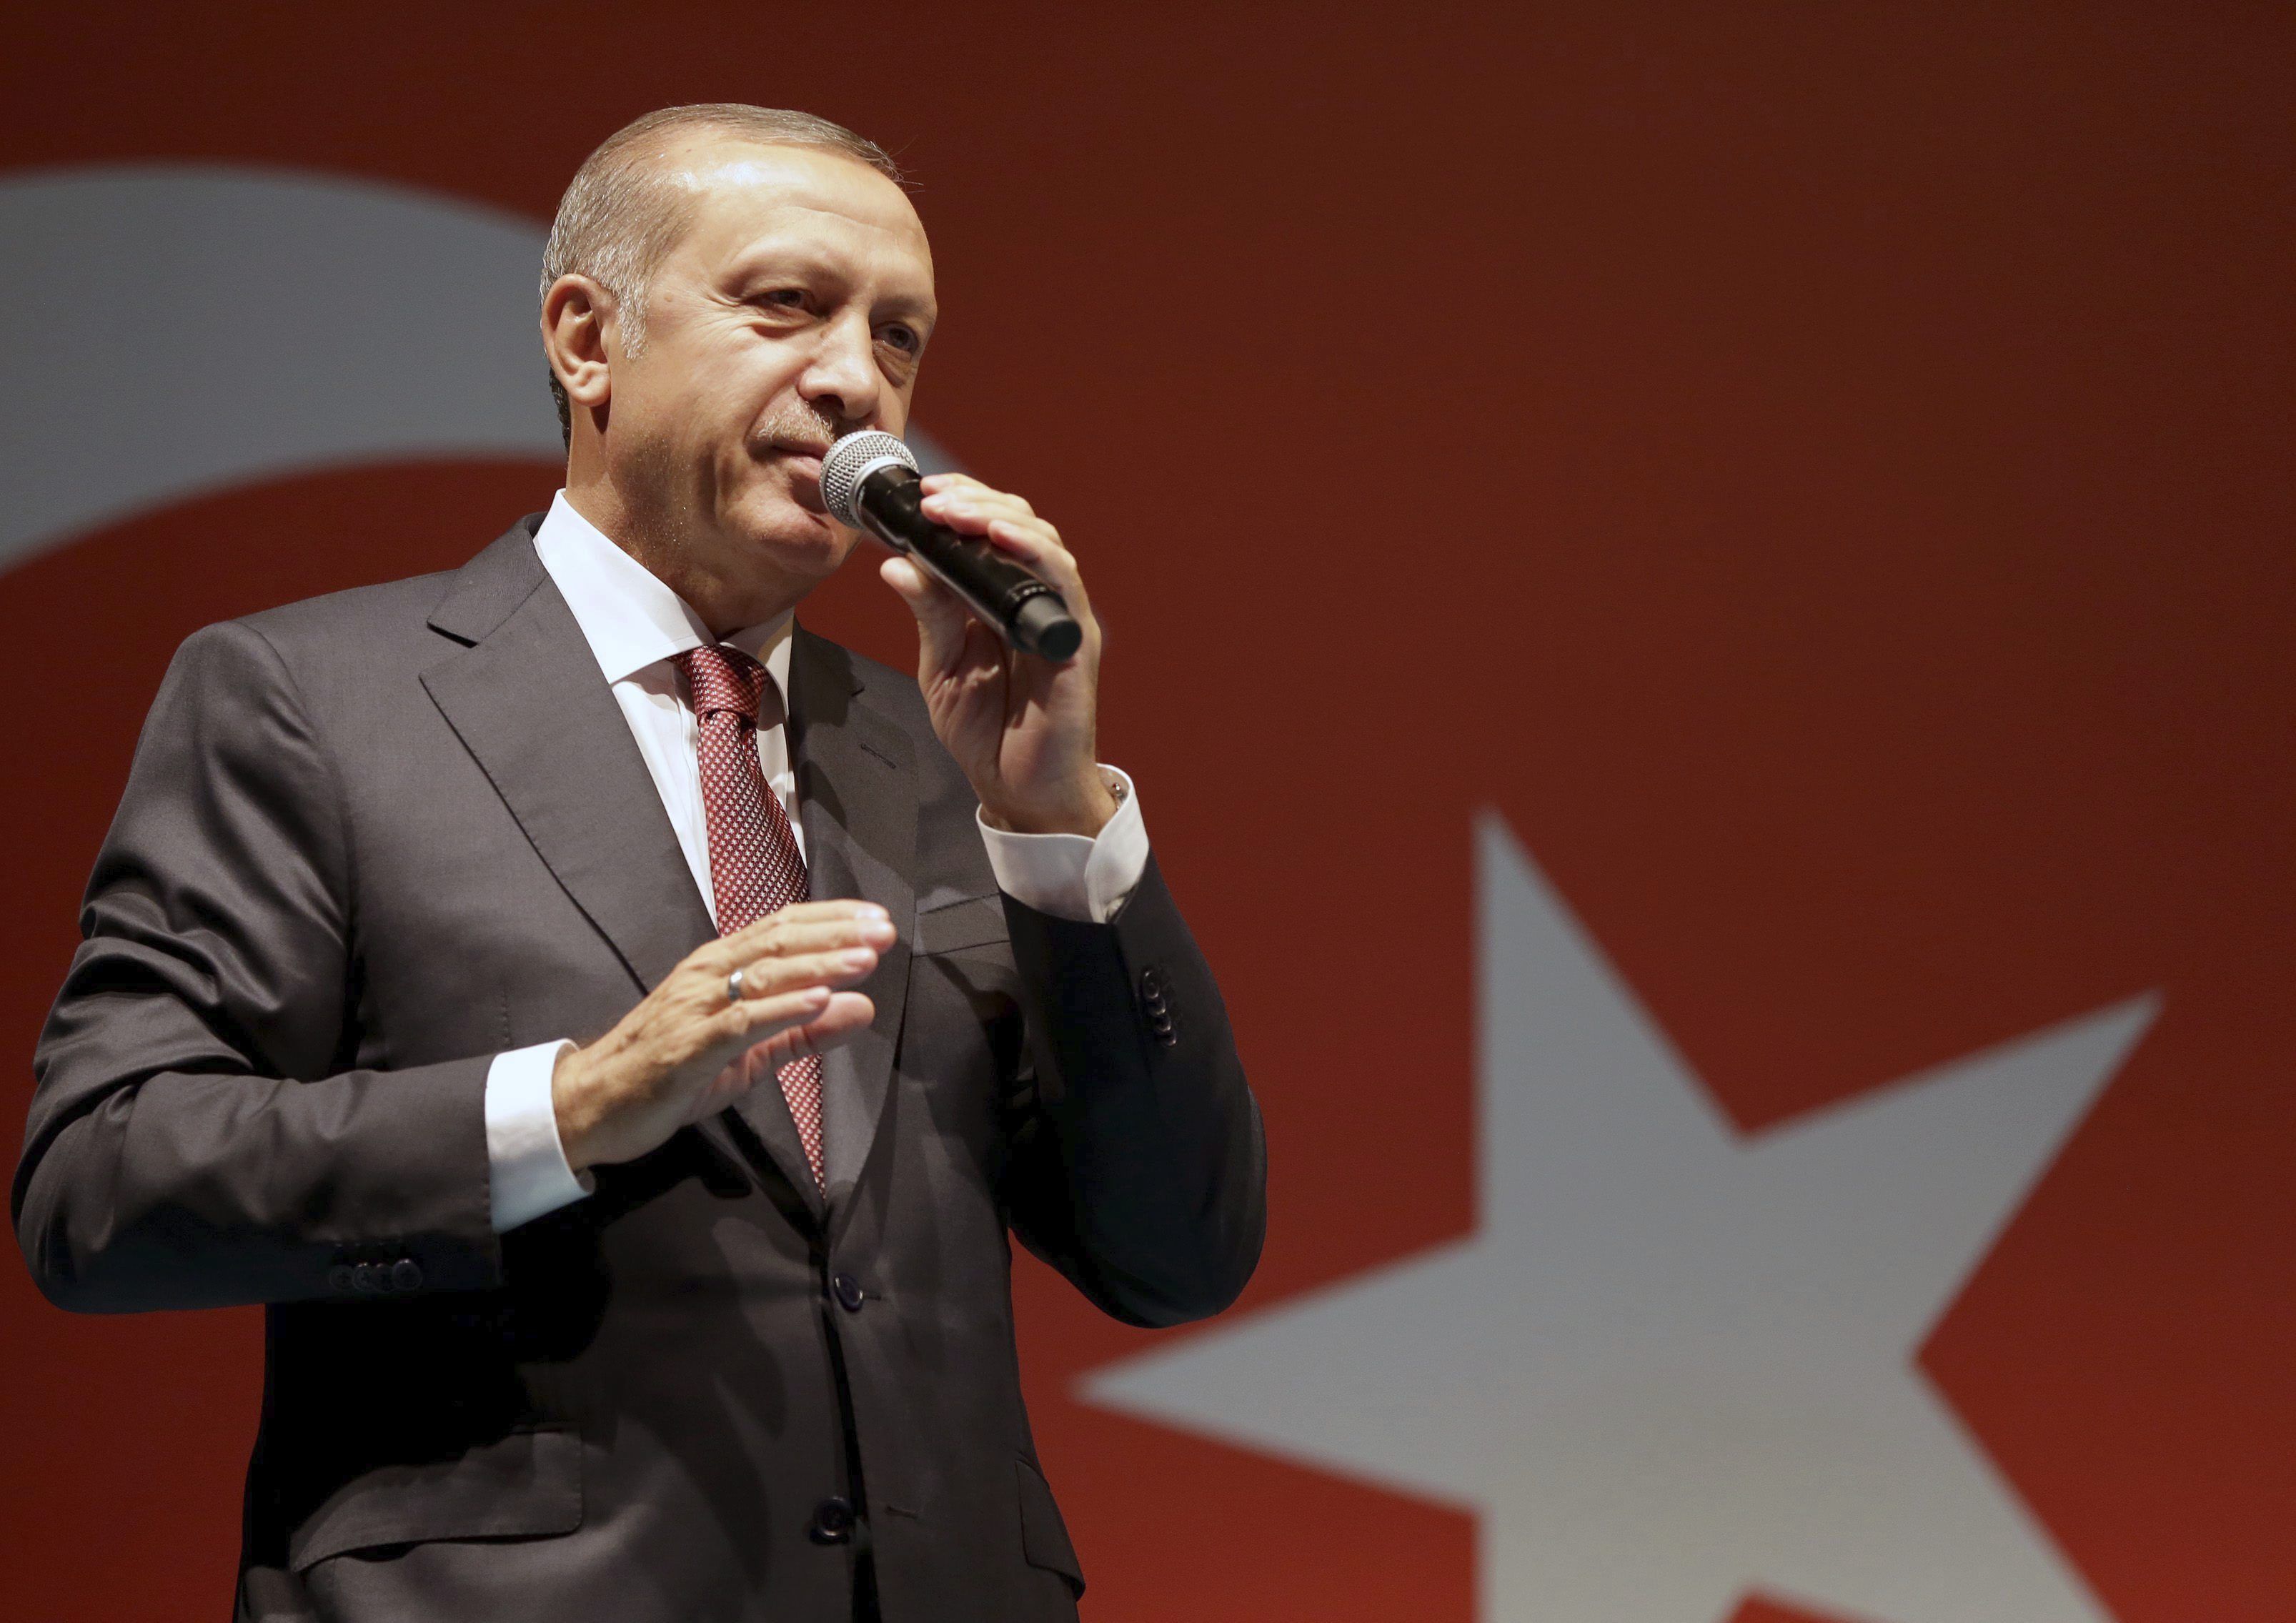 La purga de supuestos golpistas en Turquía toma dimensiones de represalia